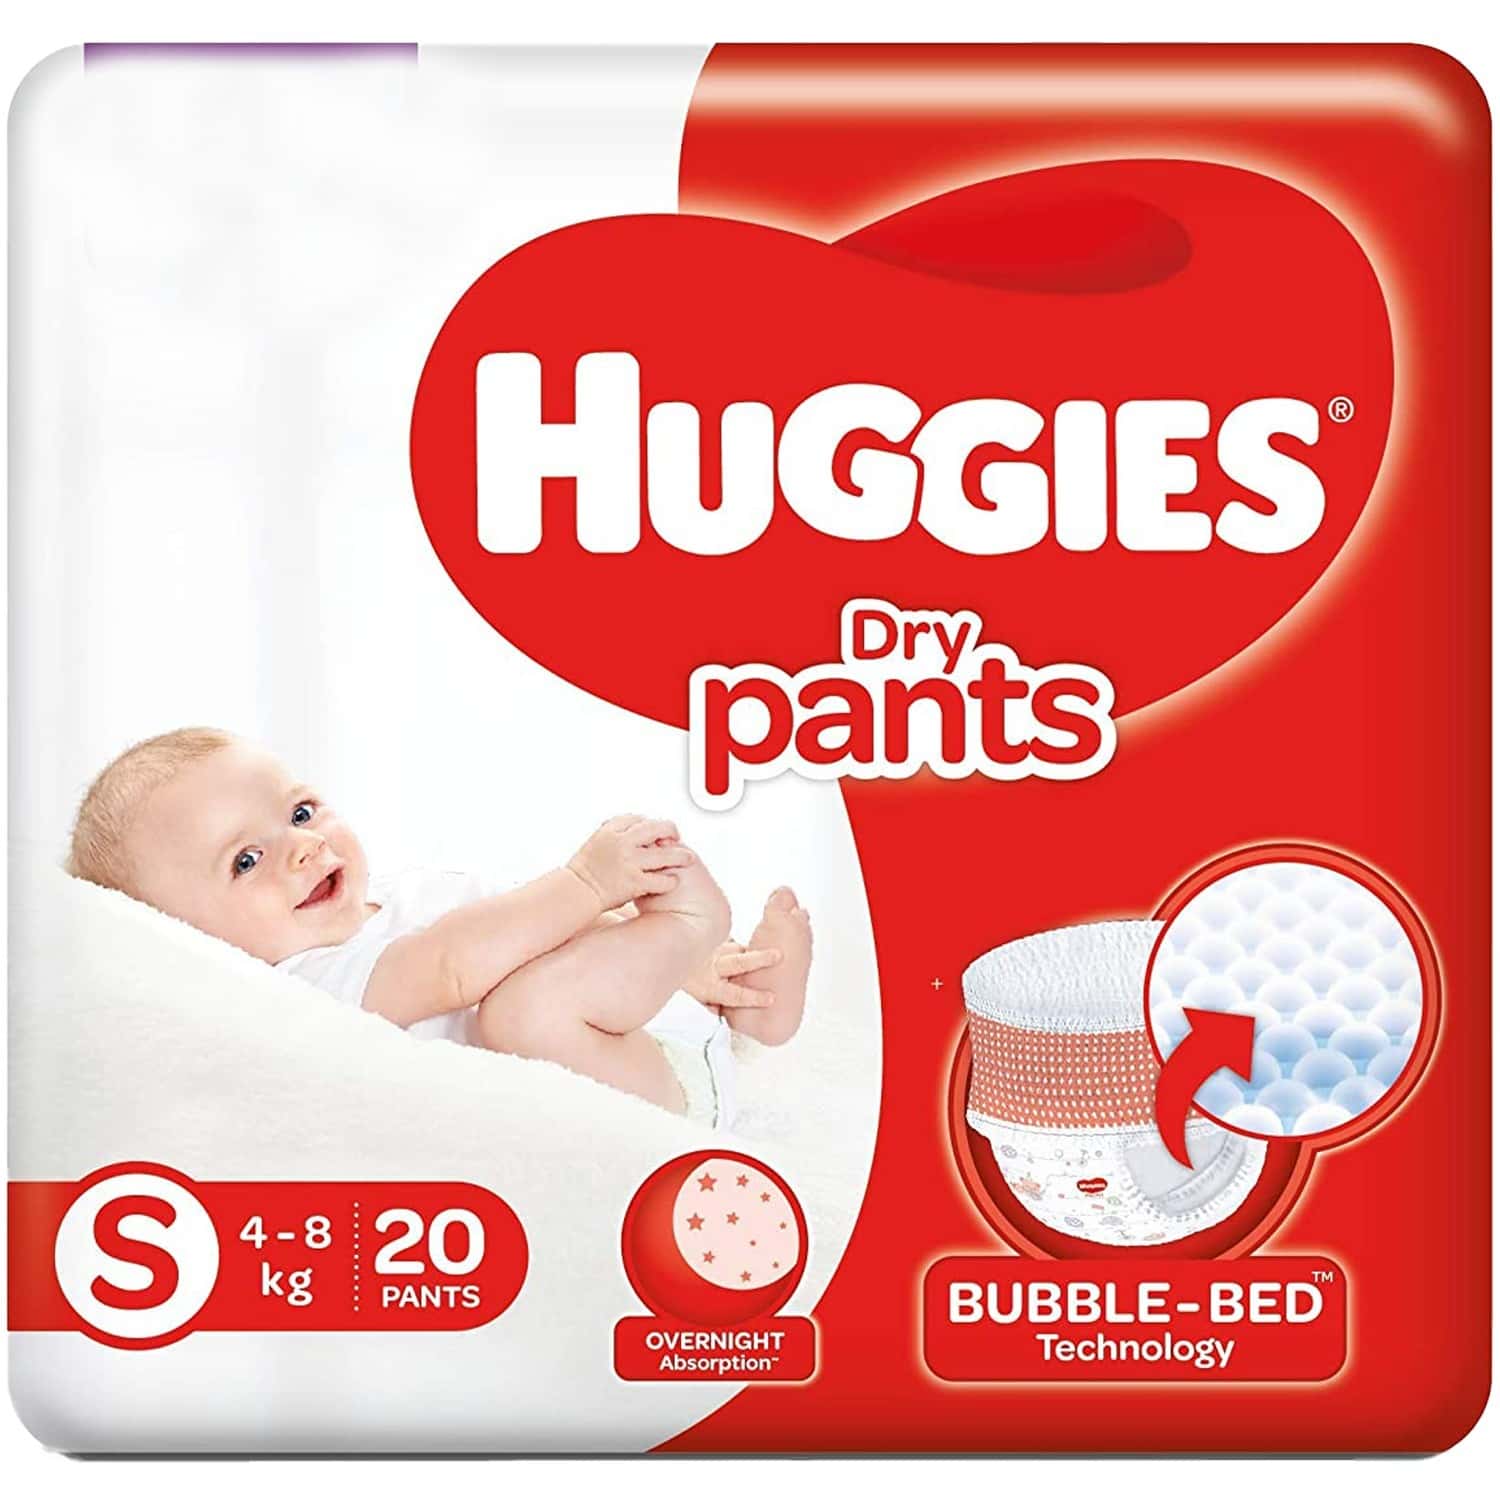 Huggies Dry Pants S 4-8 kg 20 PANTS MRP 174/-